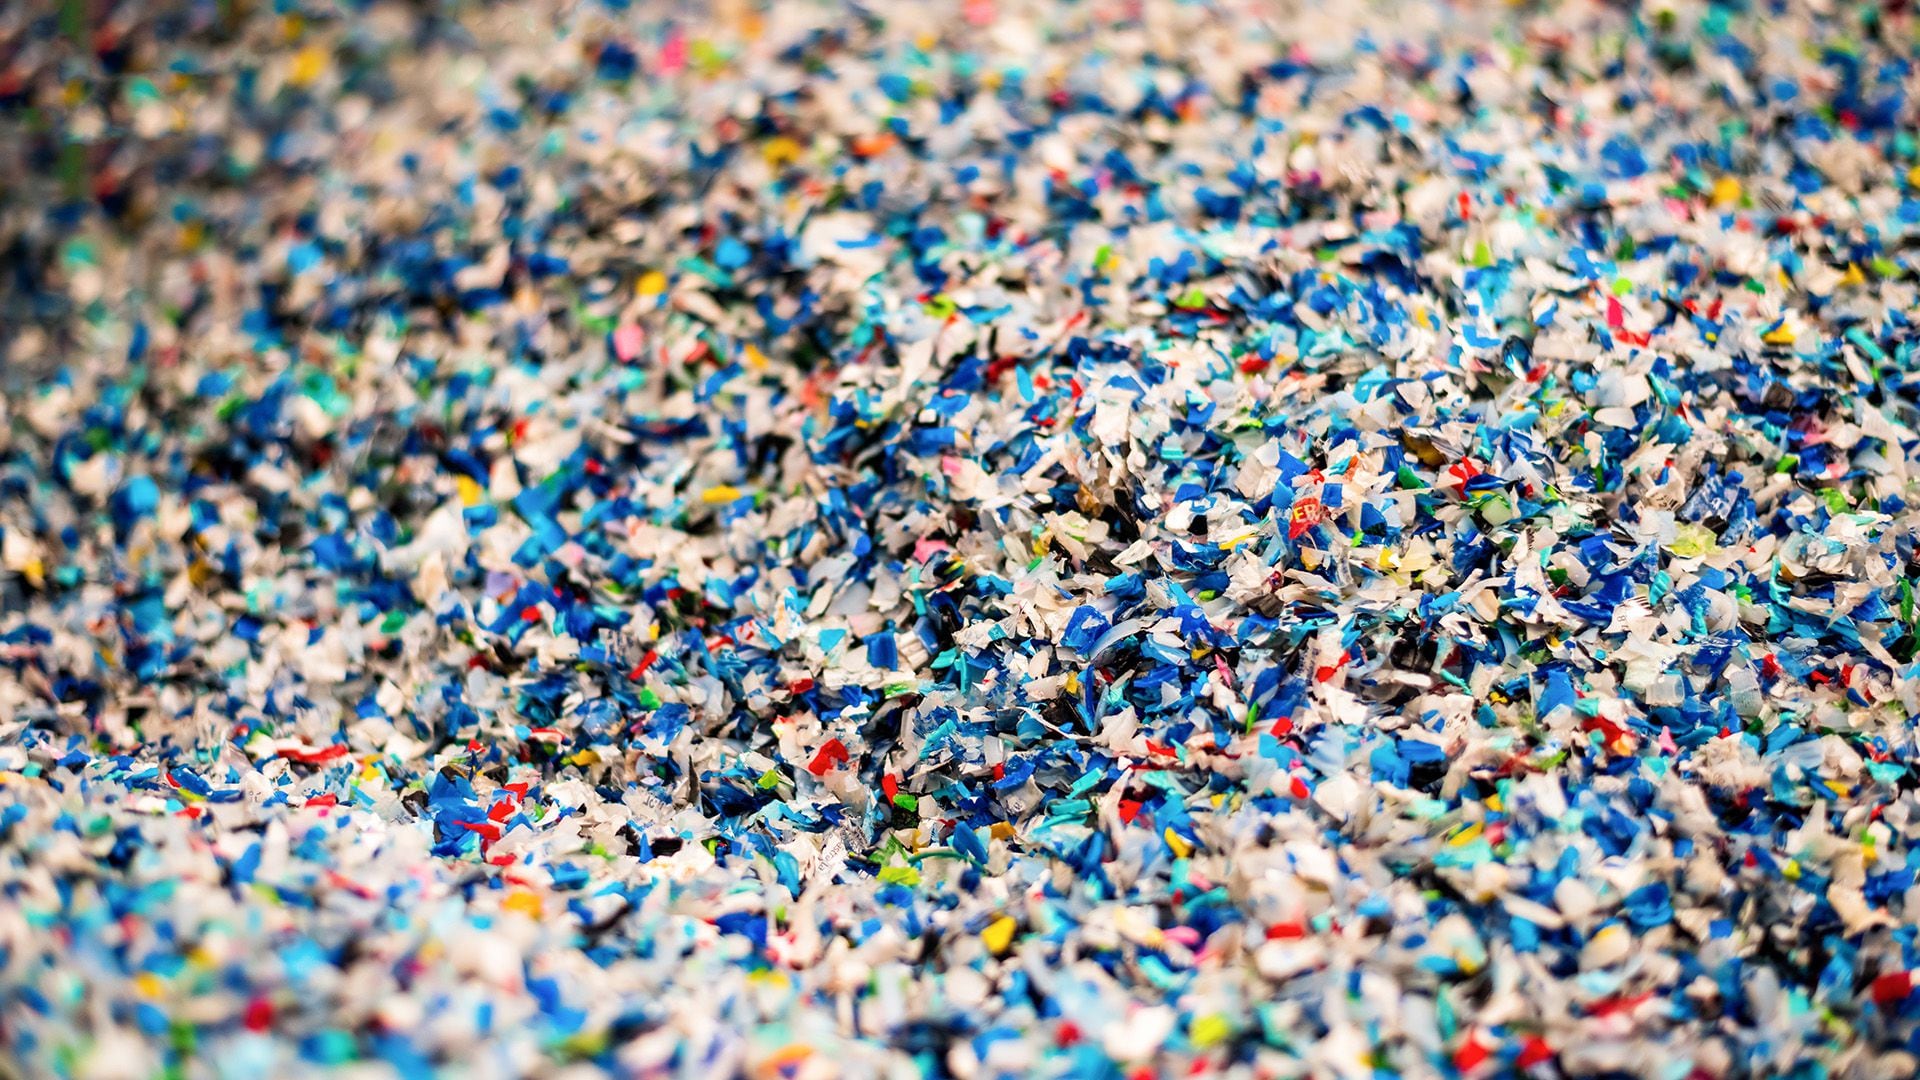 Los microplásticos están al interior de los hogares debido al lavado de ropa y los químicos de las compañías arrojados al mar (Freepik)